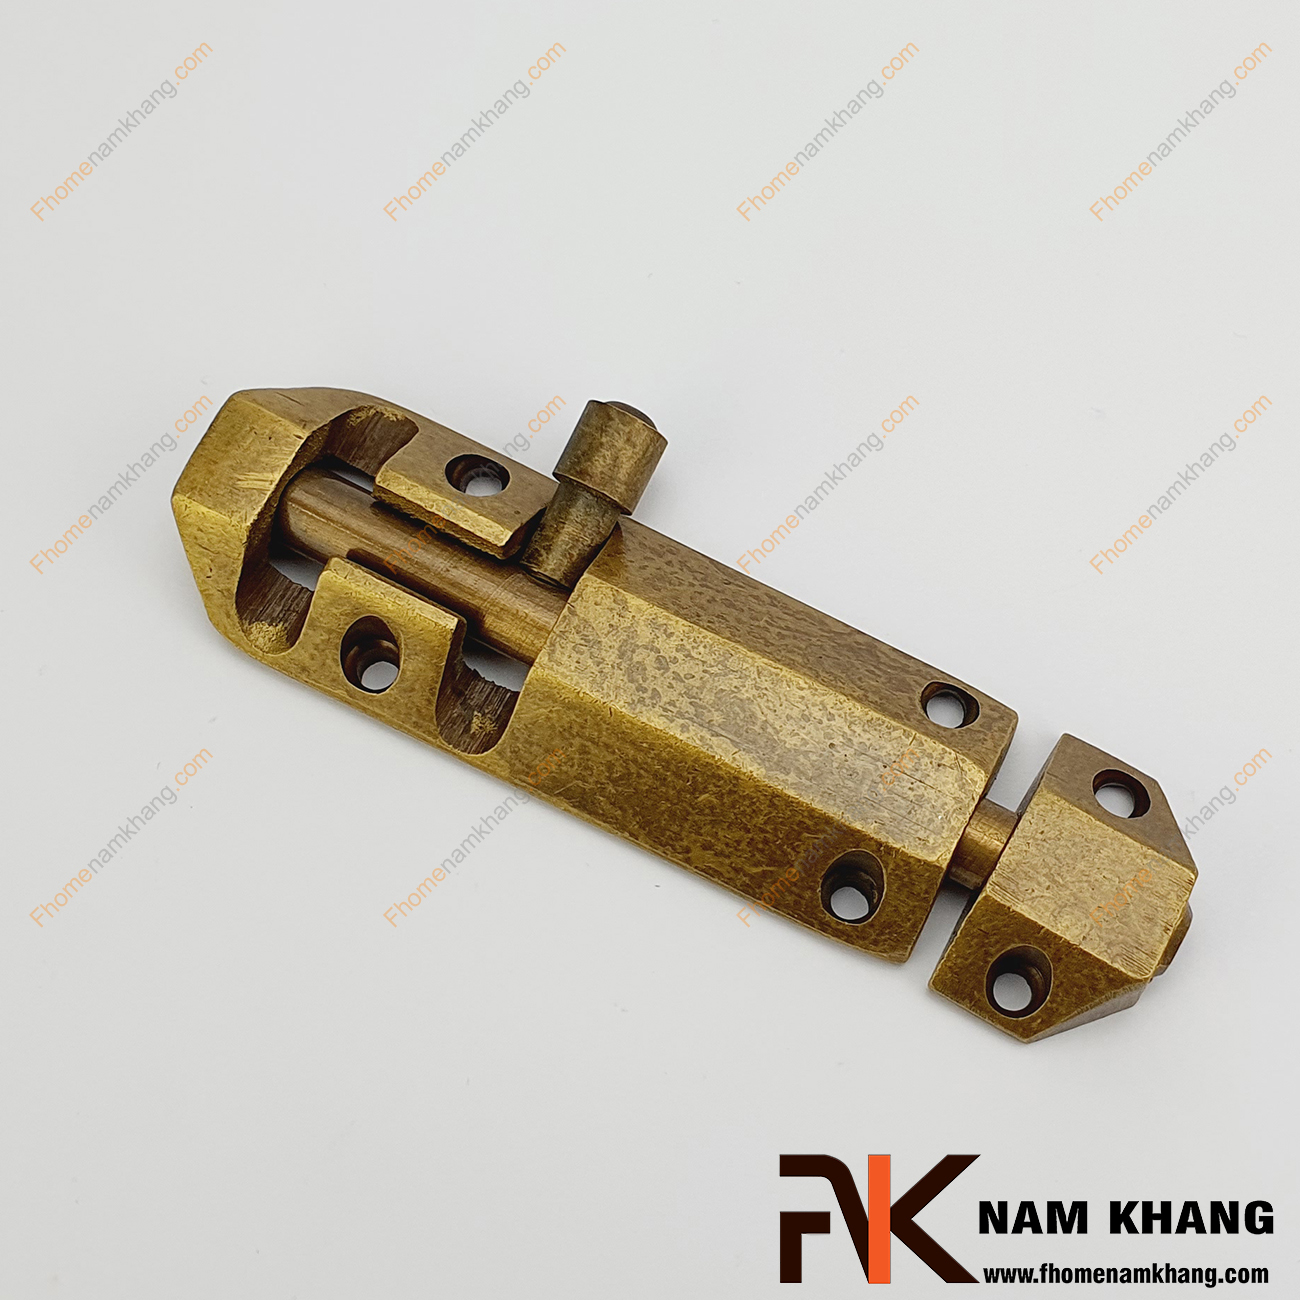 Chốt cửa bằng đồng màu đồng cổ NKD082-C là một dạng phụ kiện thường dùng trên các dạng cánh cửa tủ và cửa chính với mục đích khóa giữ cách cửa thông qua cơ cấu khóa đơn giản.